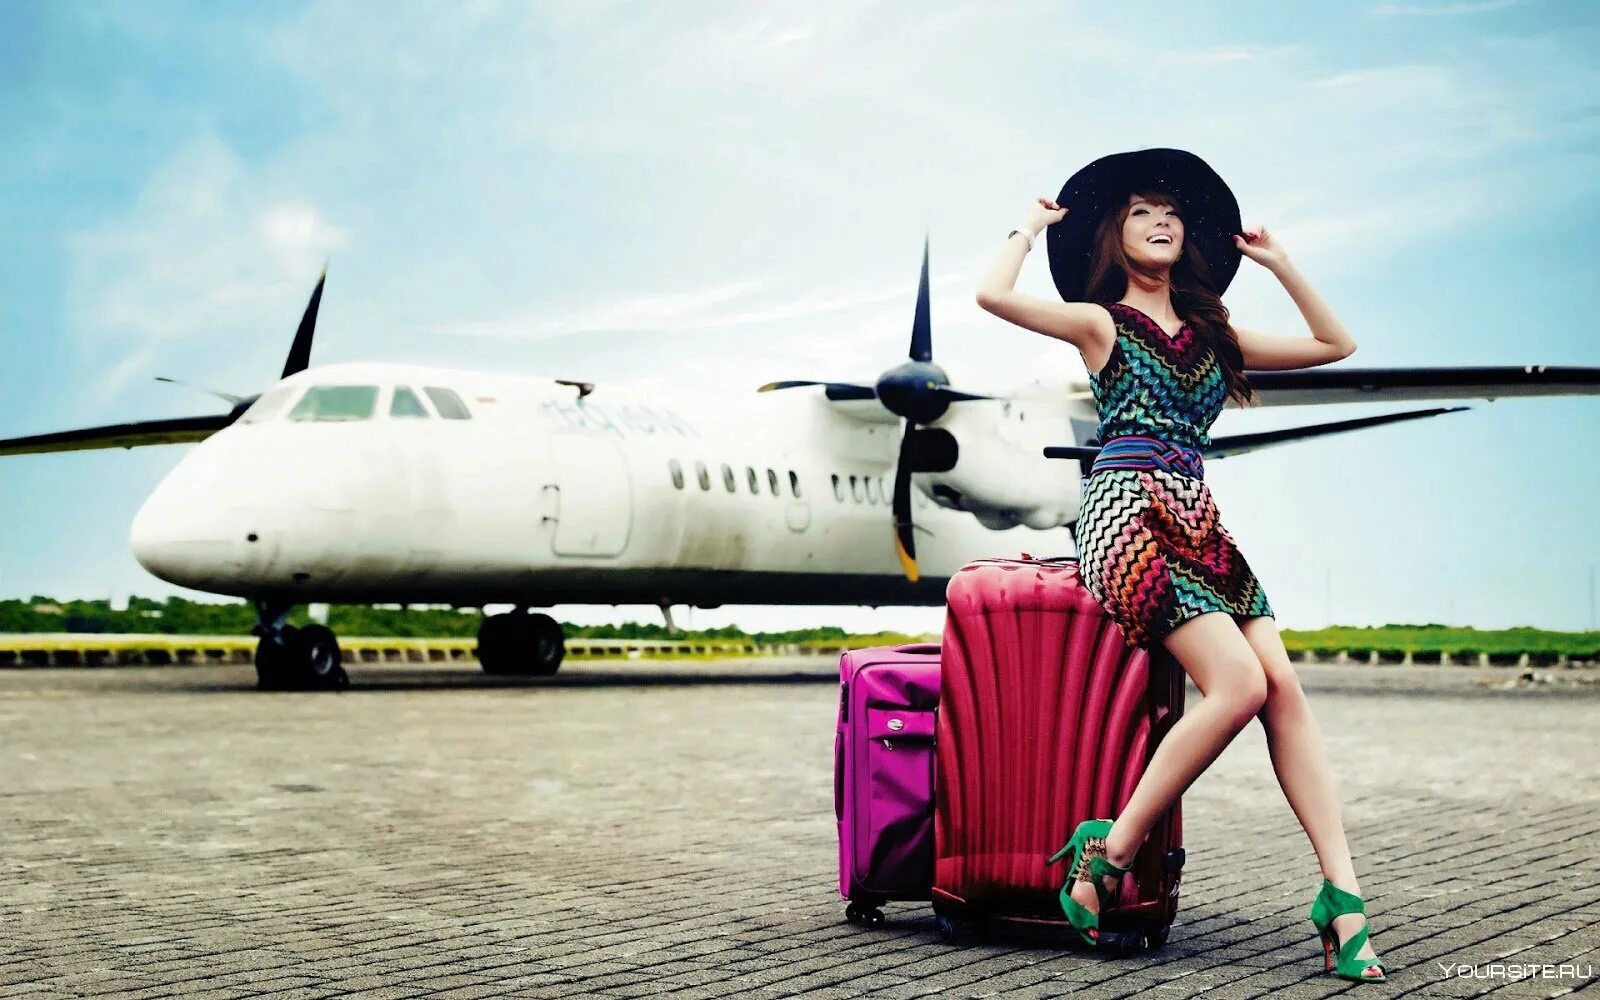 Девушка с чемоданом. Девушка путешественница. Девушка чемодан самолет. Девушка путешествует. На год заграницу